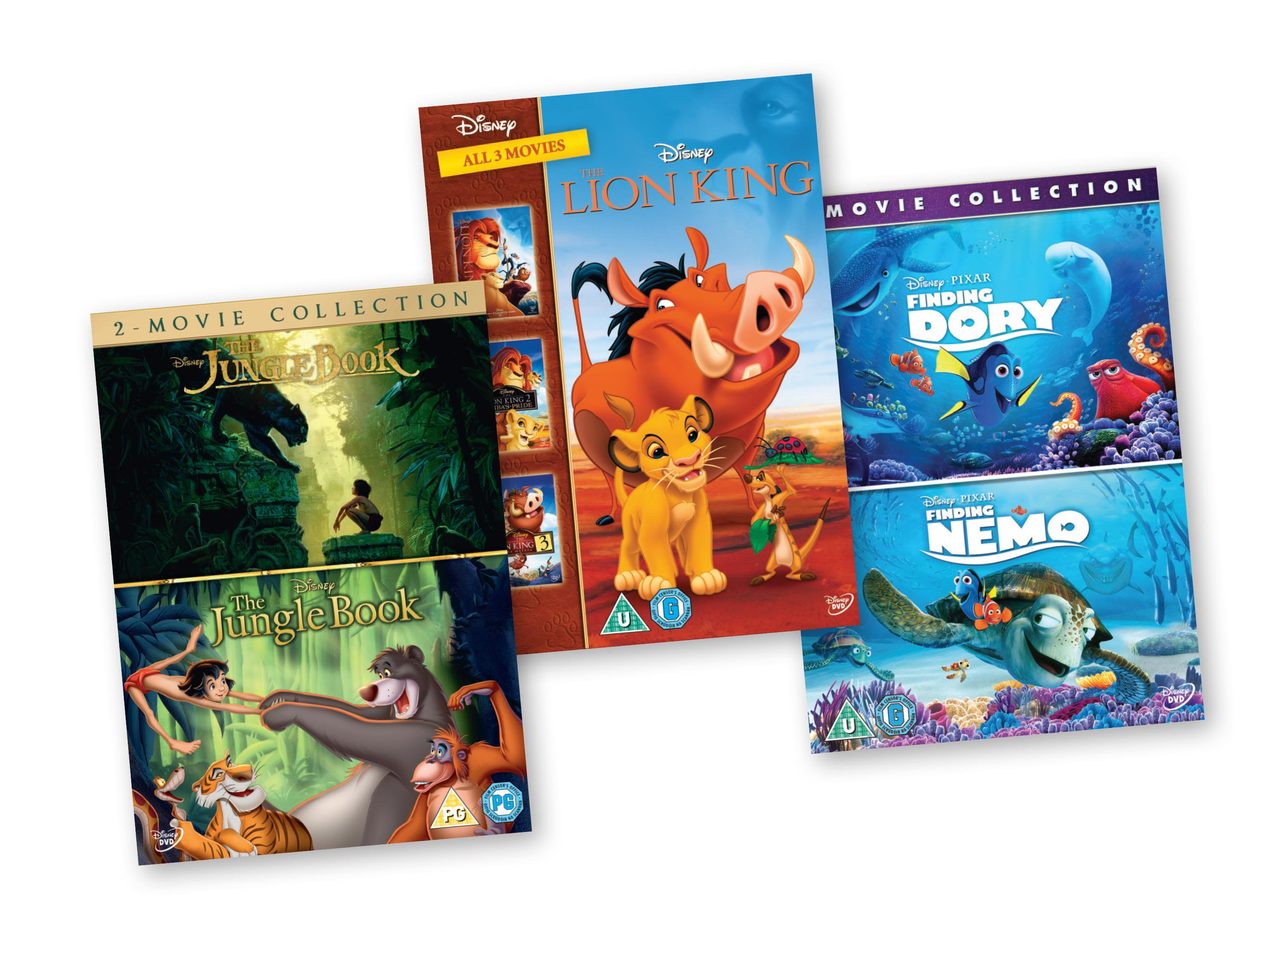 Latijns fantoom maximaliseren Assorted Disney DVD's - Lidl — Ireland - Specials archive